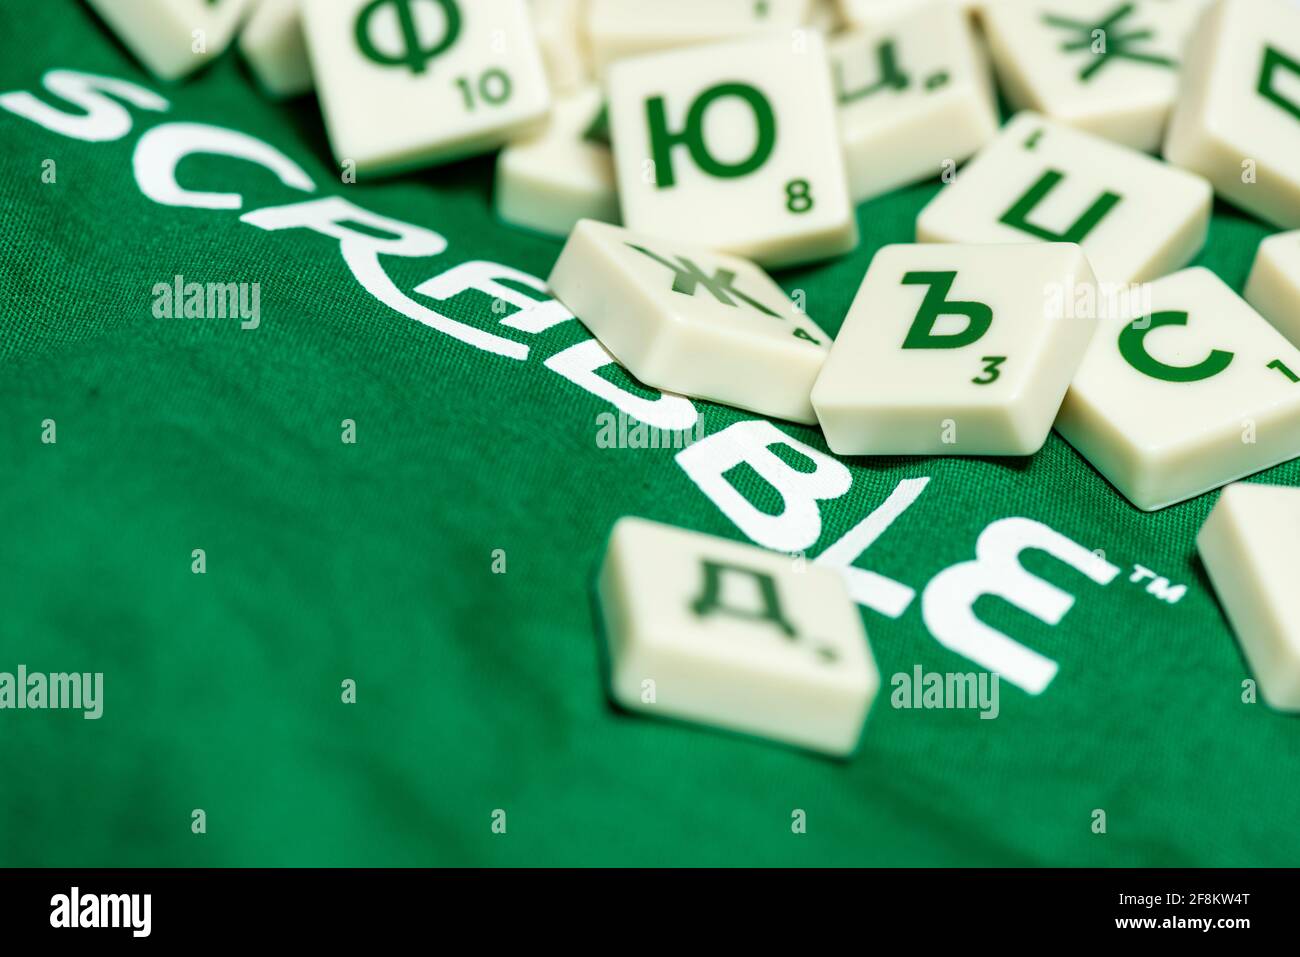 Carreaux de jeu de crabble bulgare avec lettres cyrilliques Banque D'Images